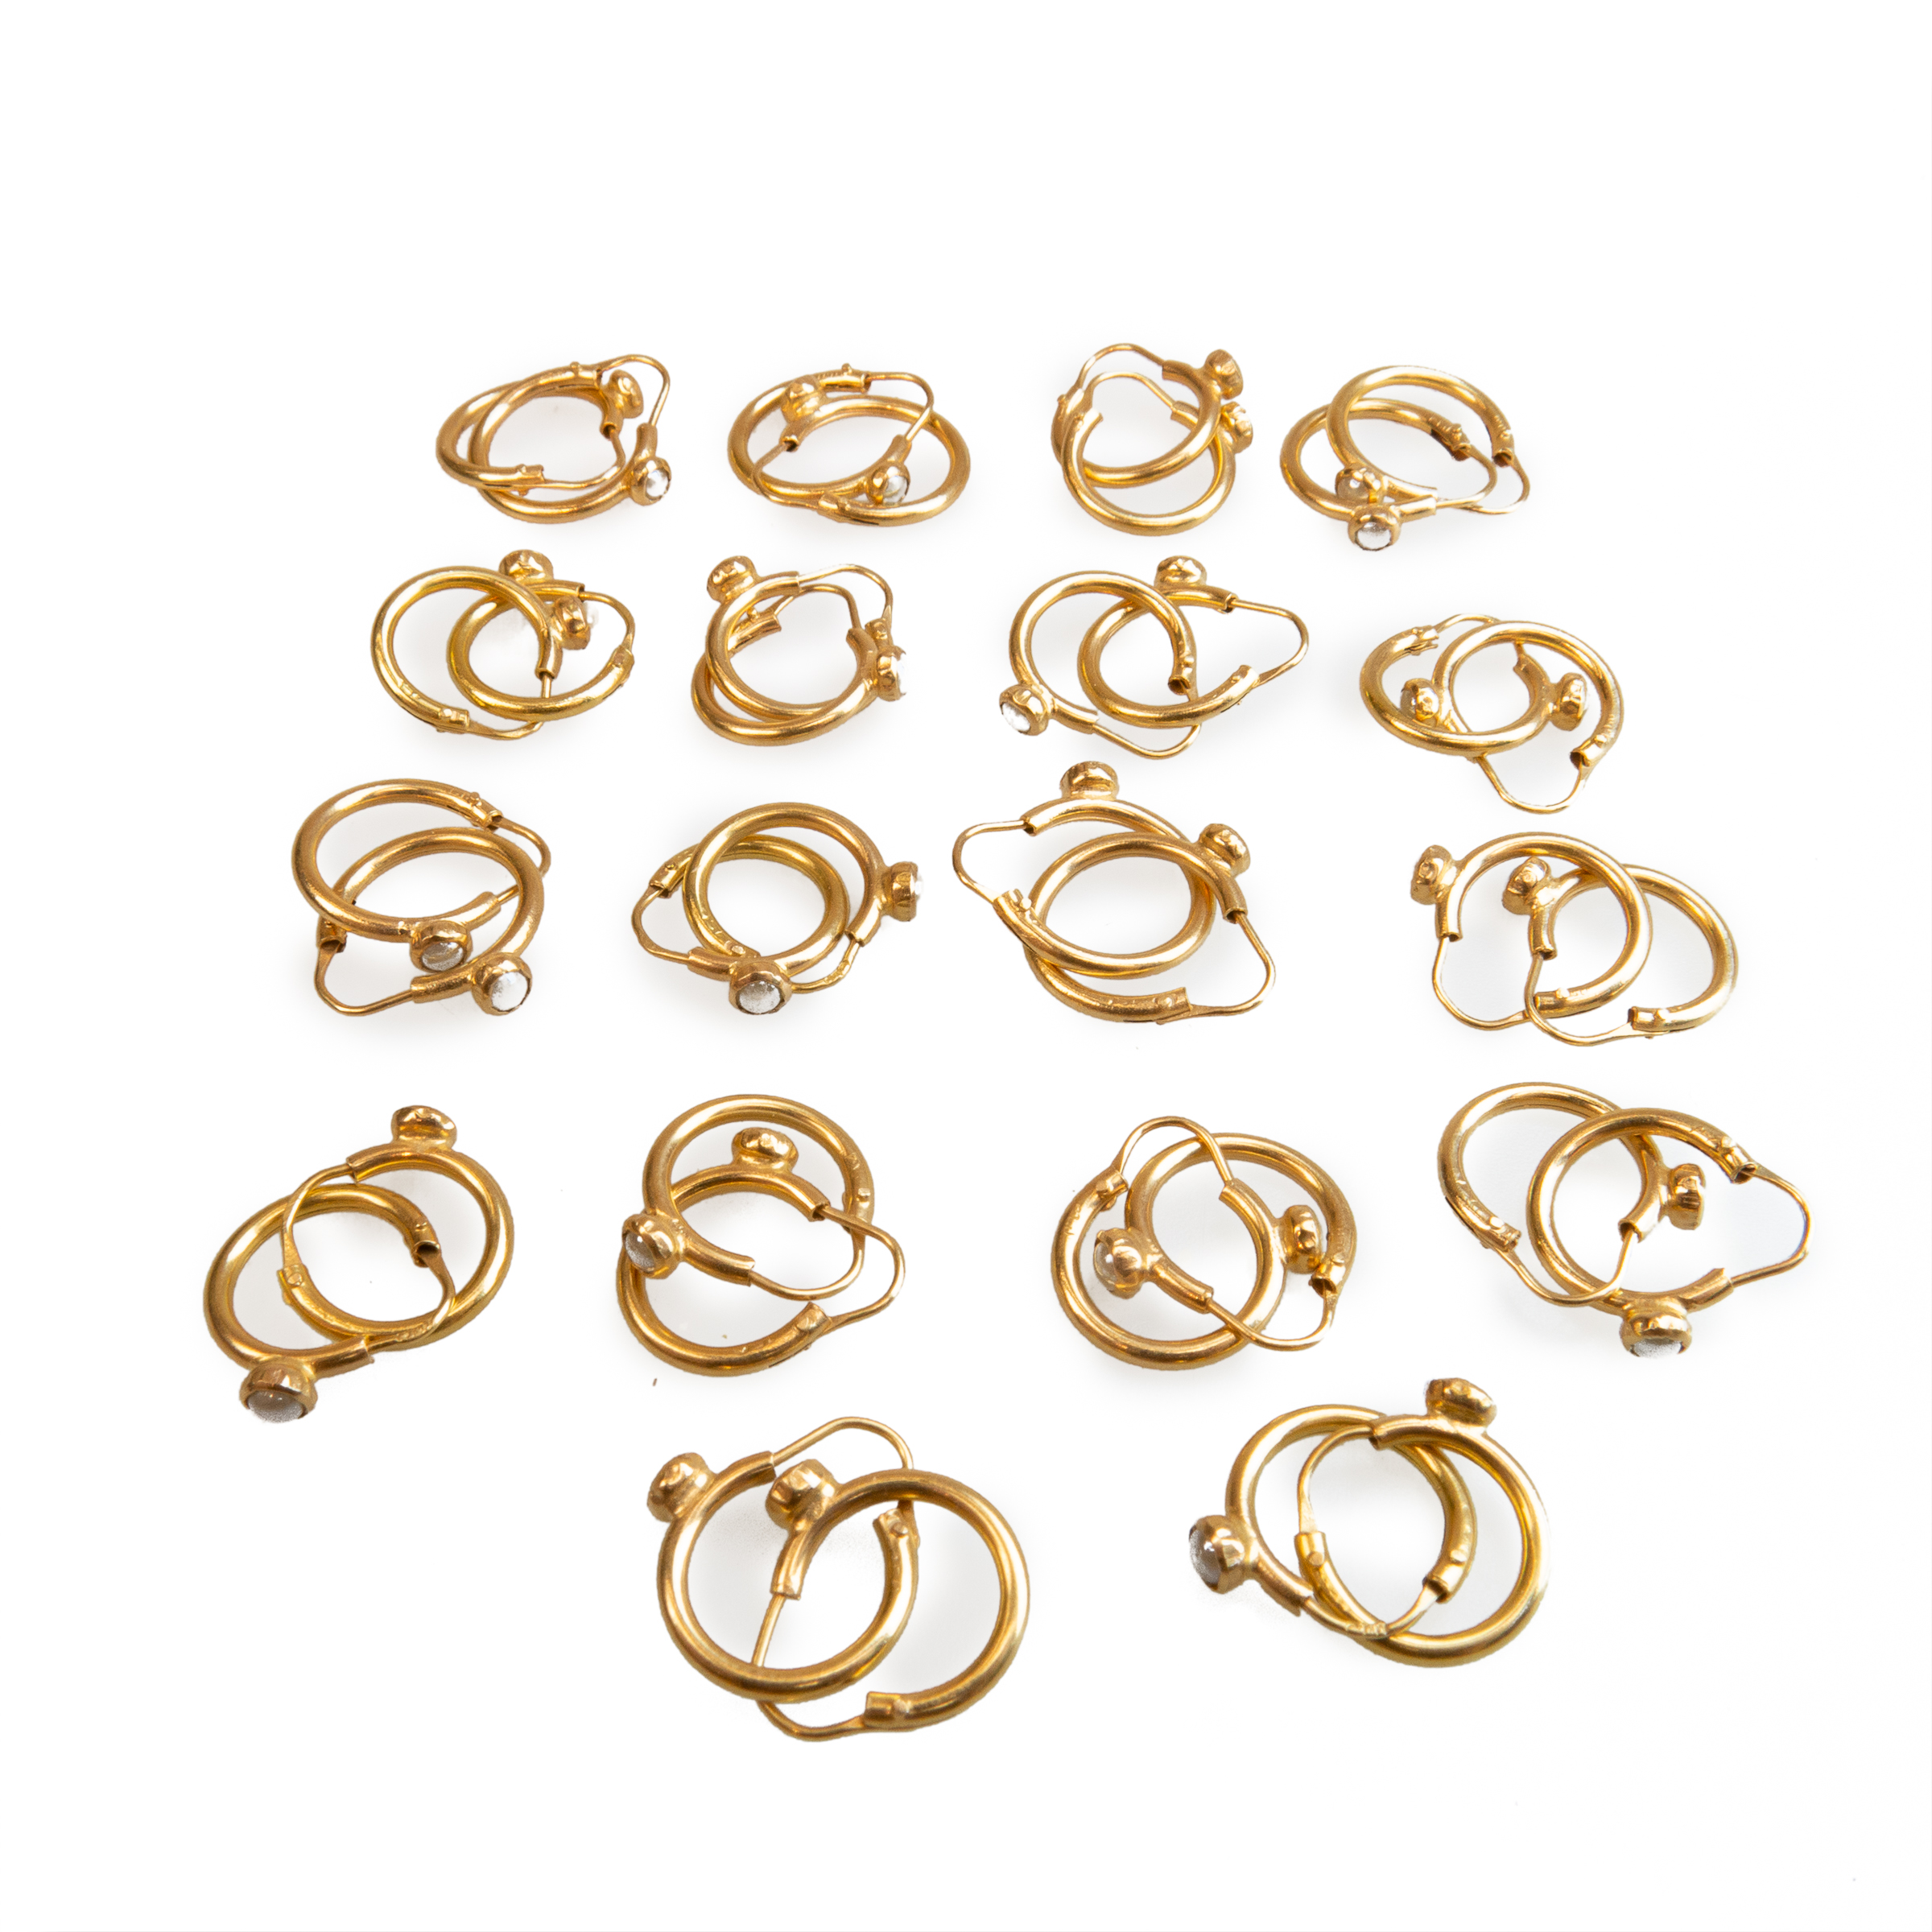 18 x Pairs Of 18k Yellow Gold Hoop Earrings